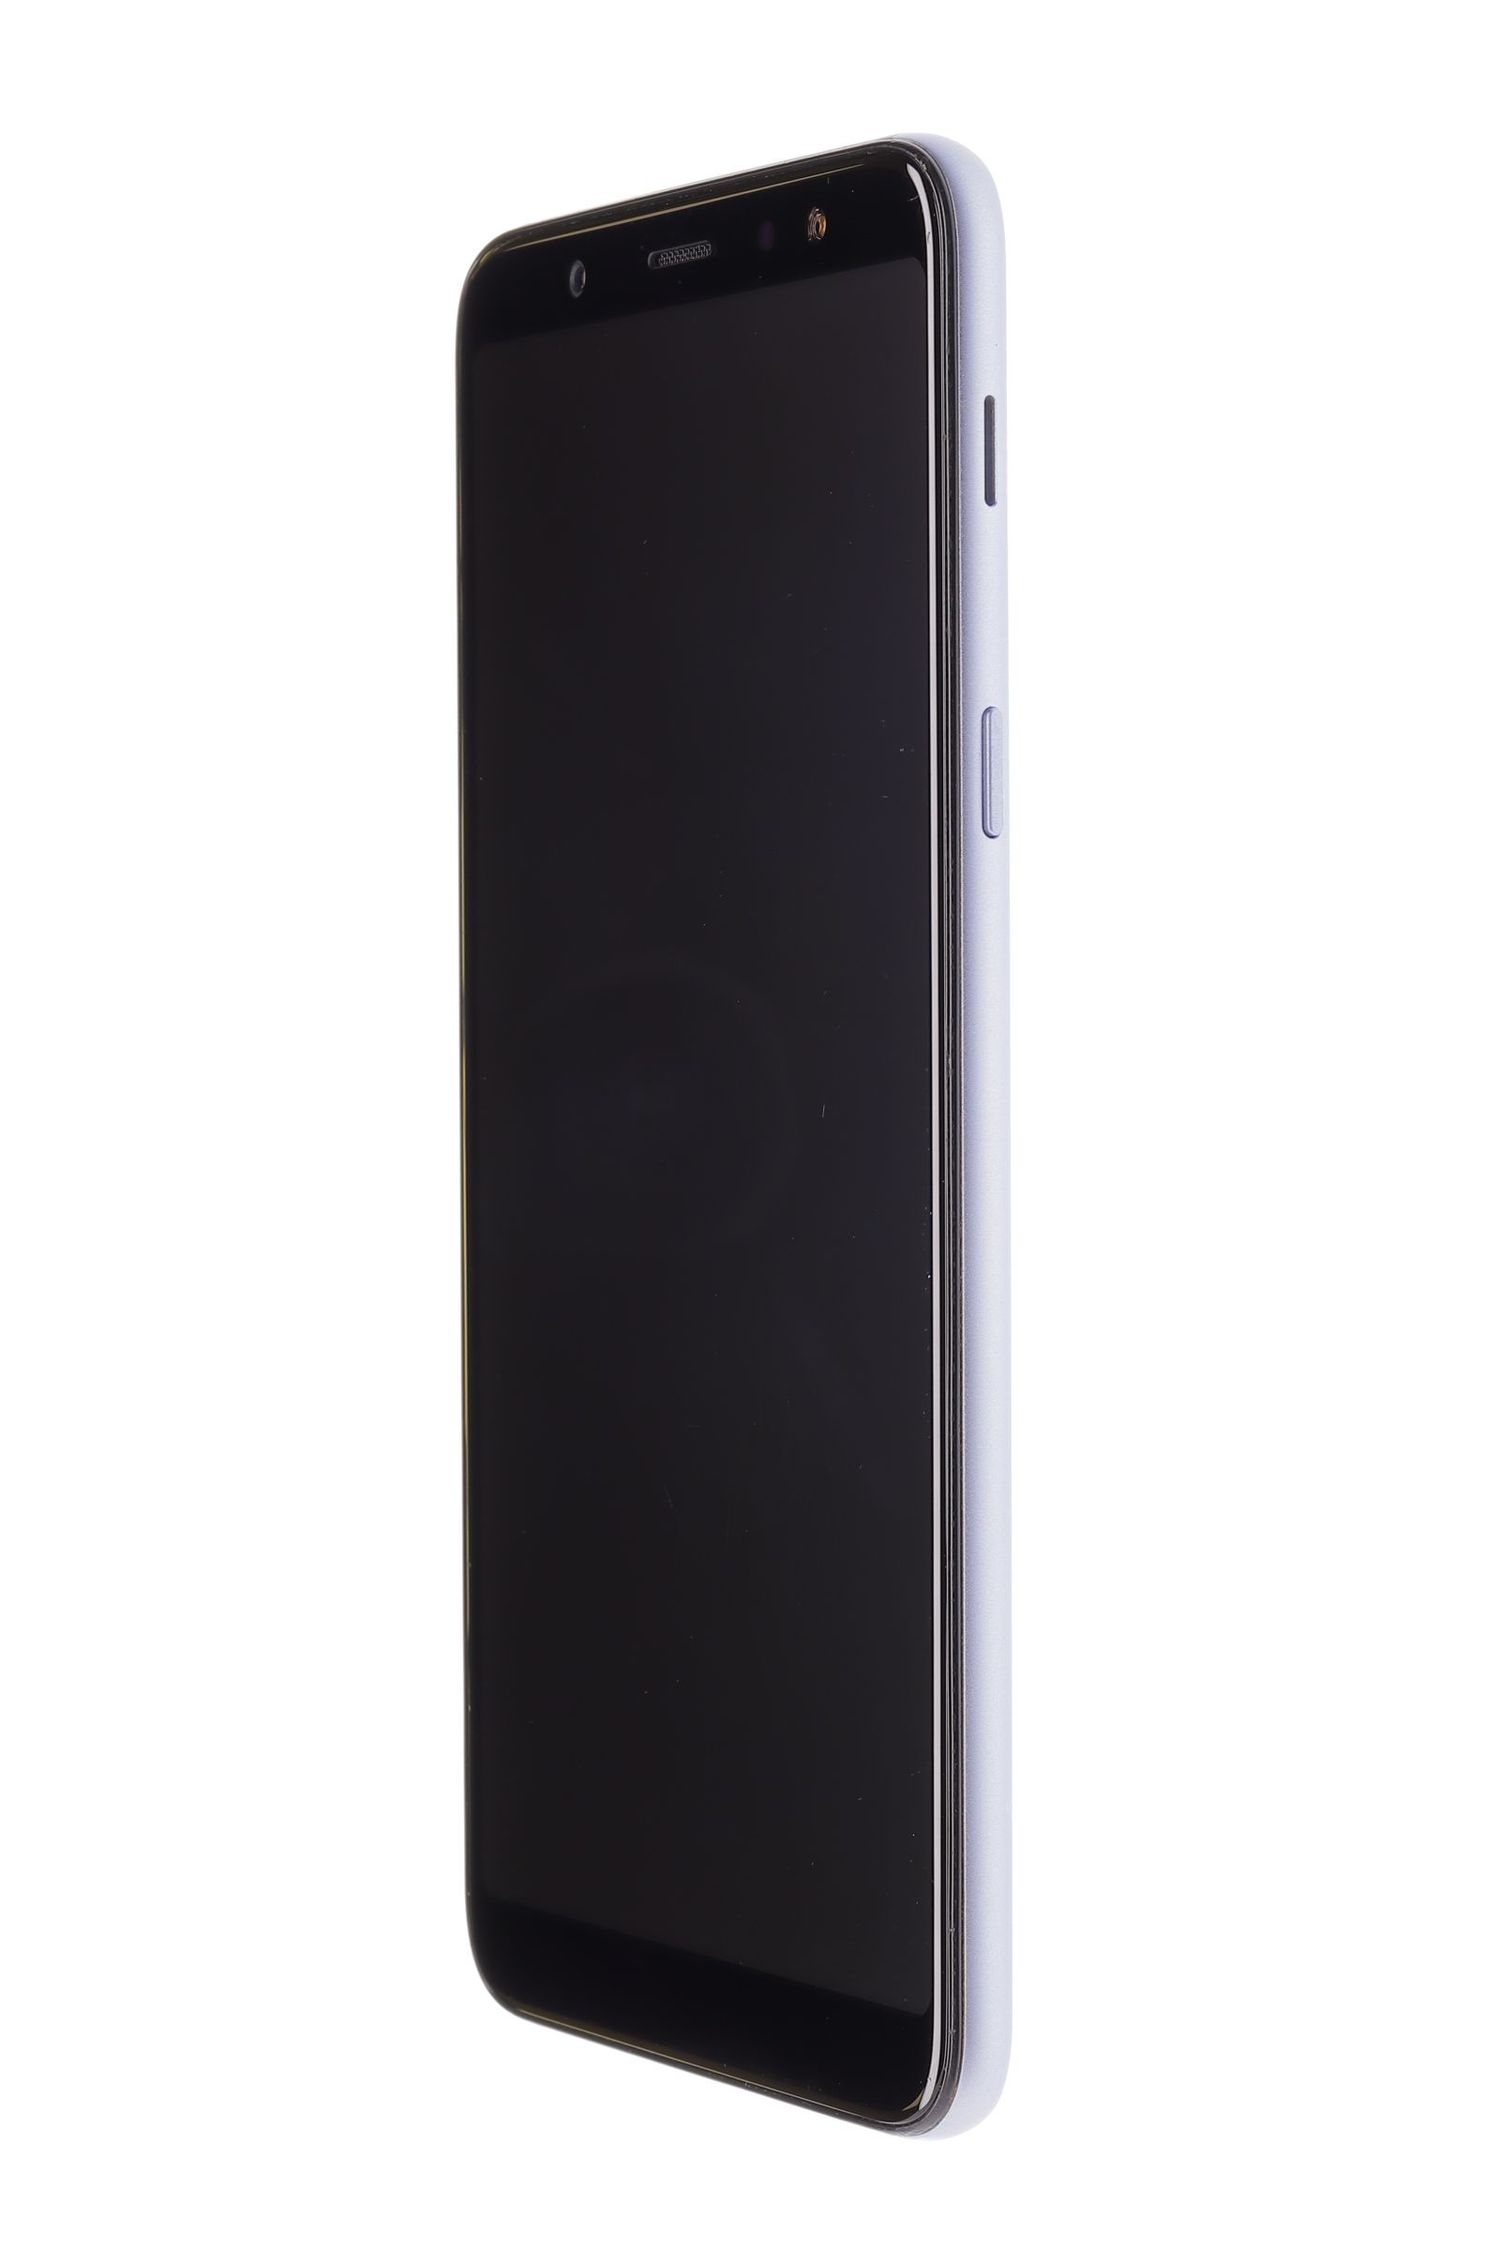 Мобилен телефон Samsung Galaxy A6 Plus (2018) Dual Sim, Lavender, 32 GB, Foarte Bun